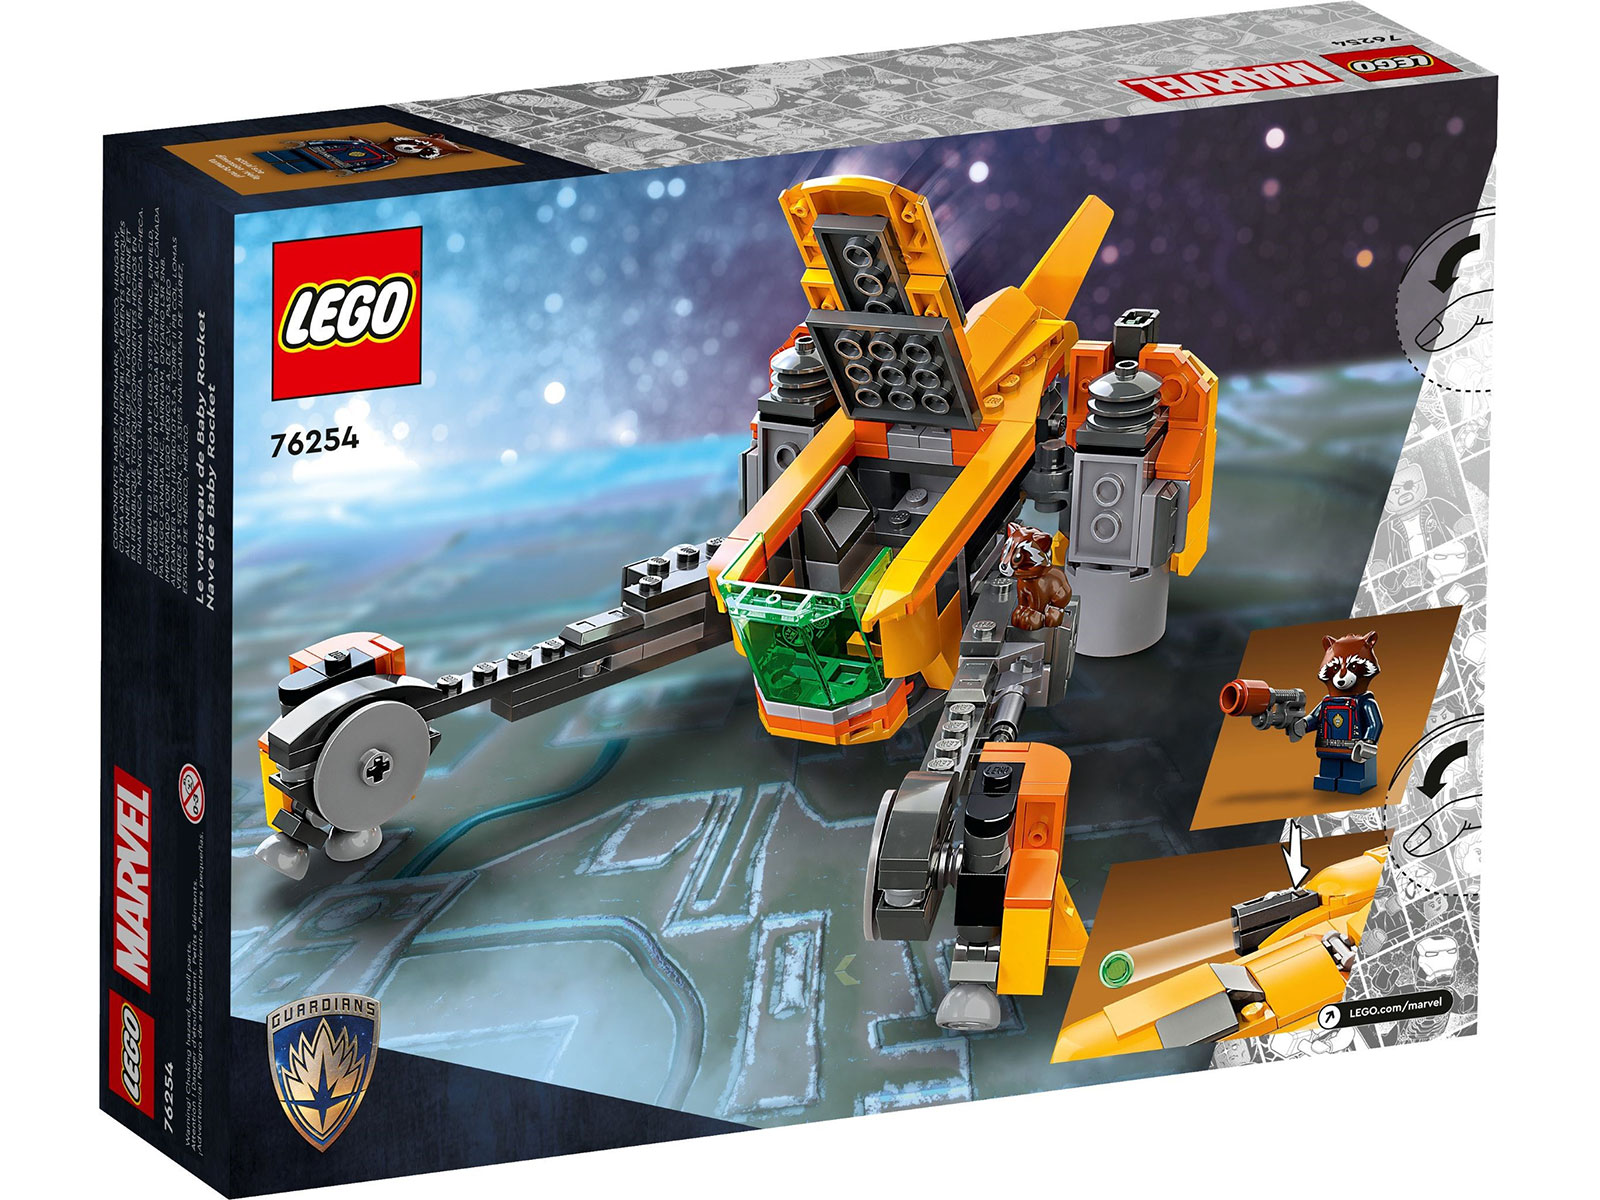 LEGO® Marvel 76254 - Baby Rockets Schiff